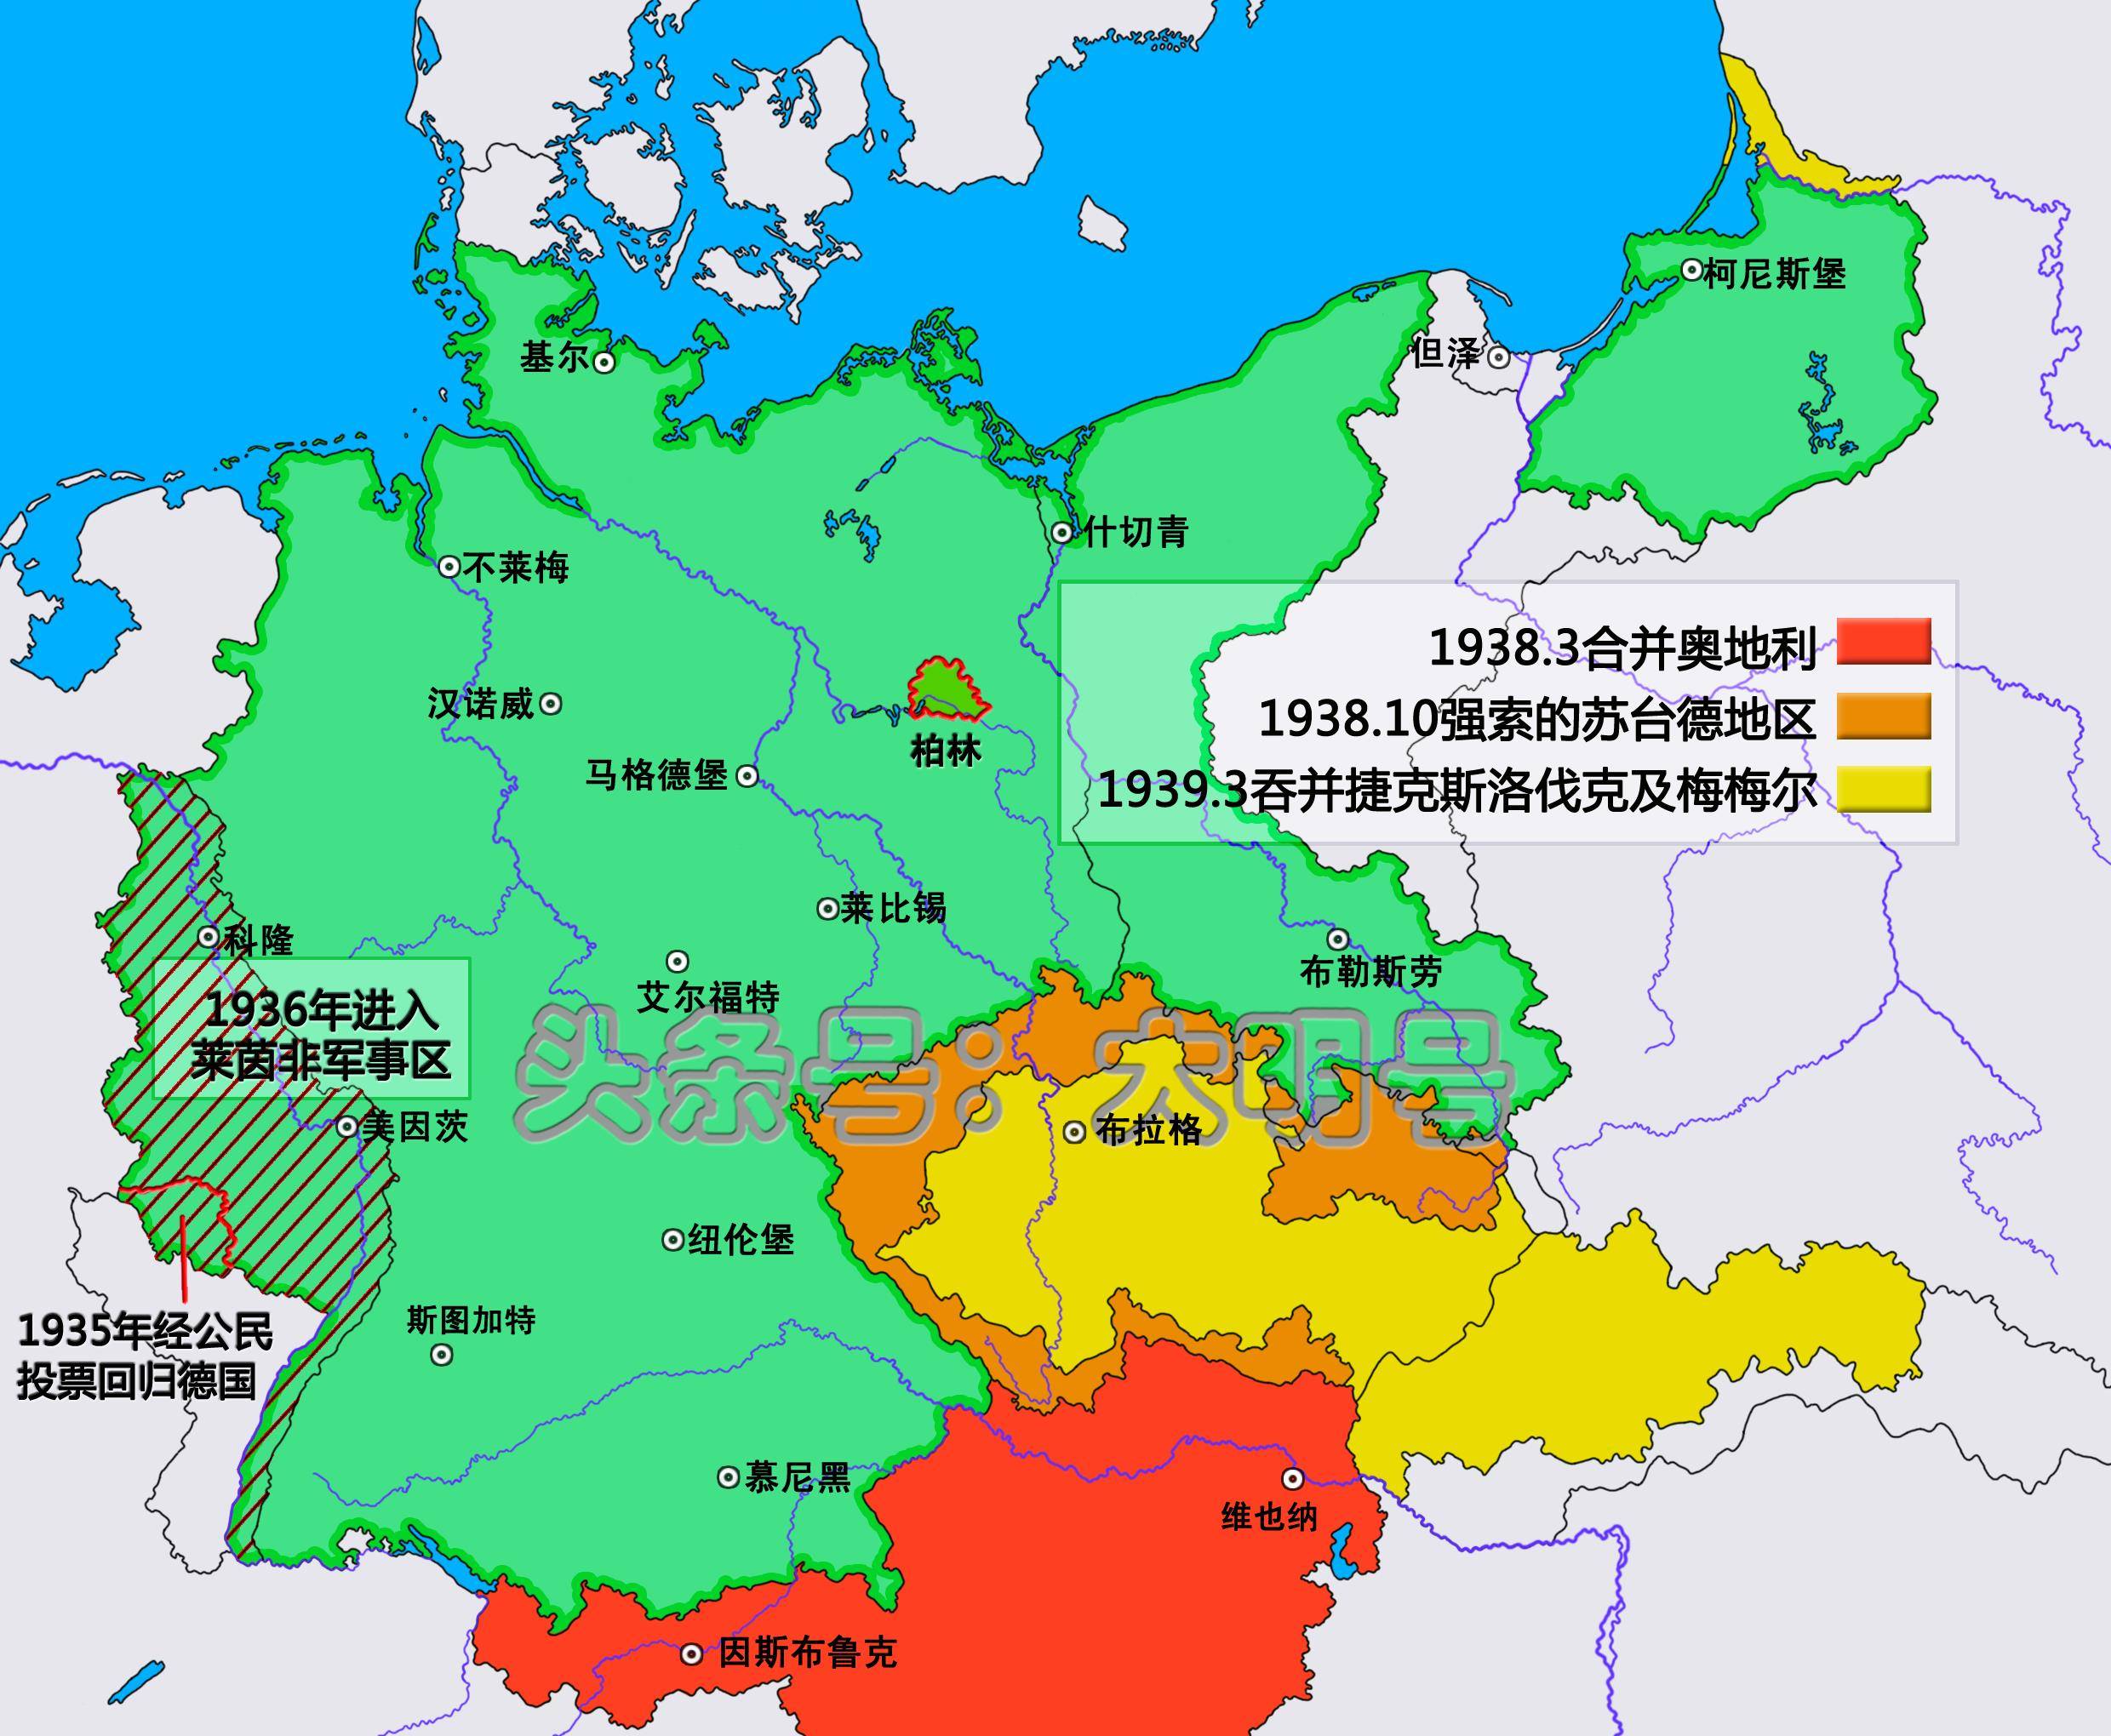 所有人都希望德国崛起,天时,地利,人和,德国全部有了,魏玛共和国覆灭